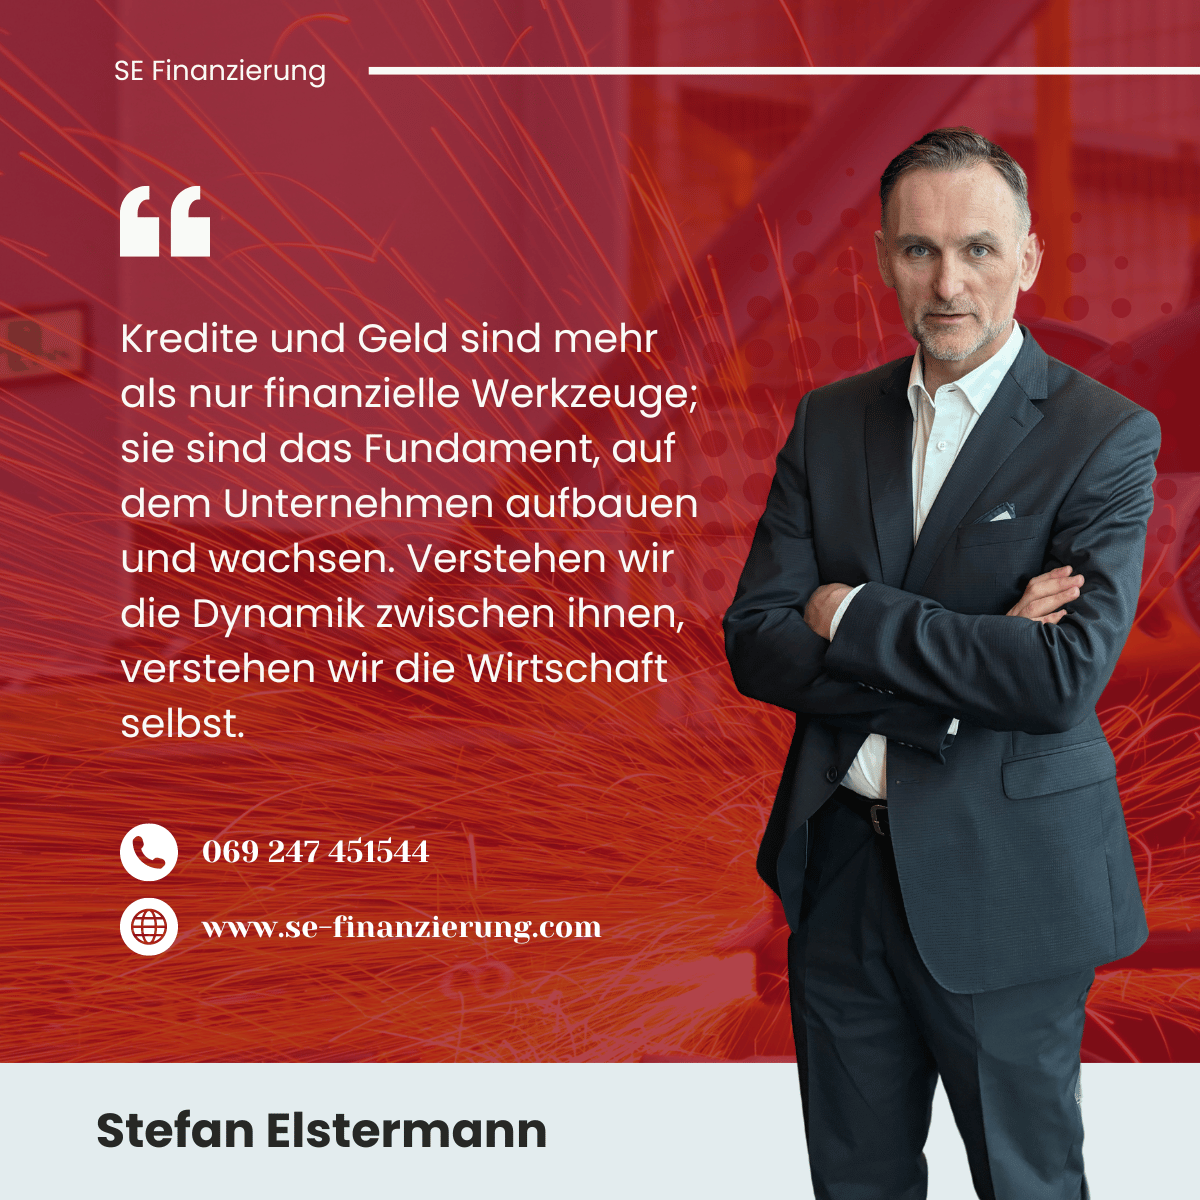 Stefan Elstermann - Fundament der Wirtschaft